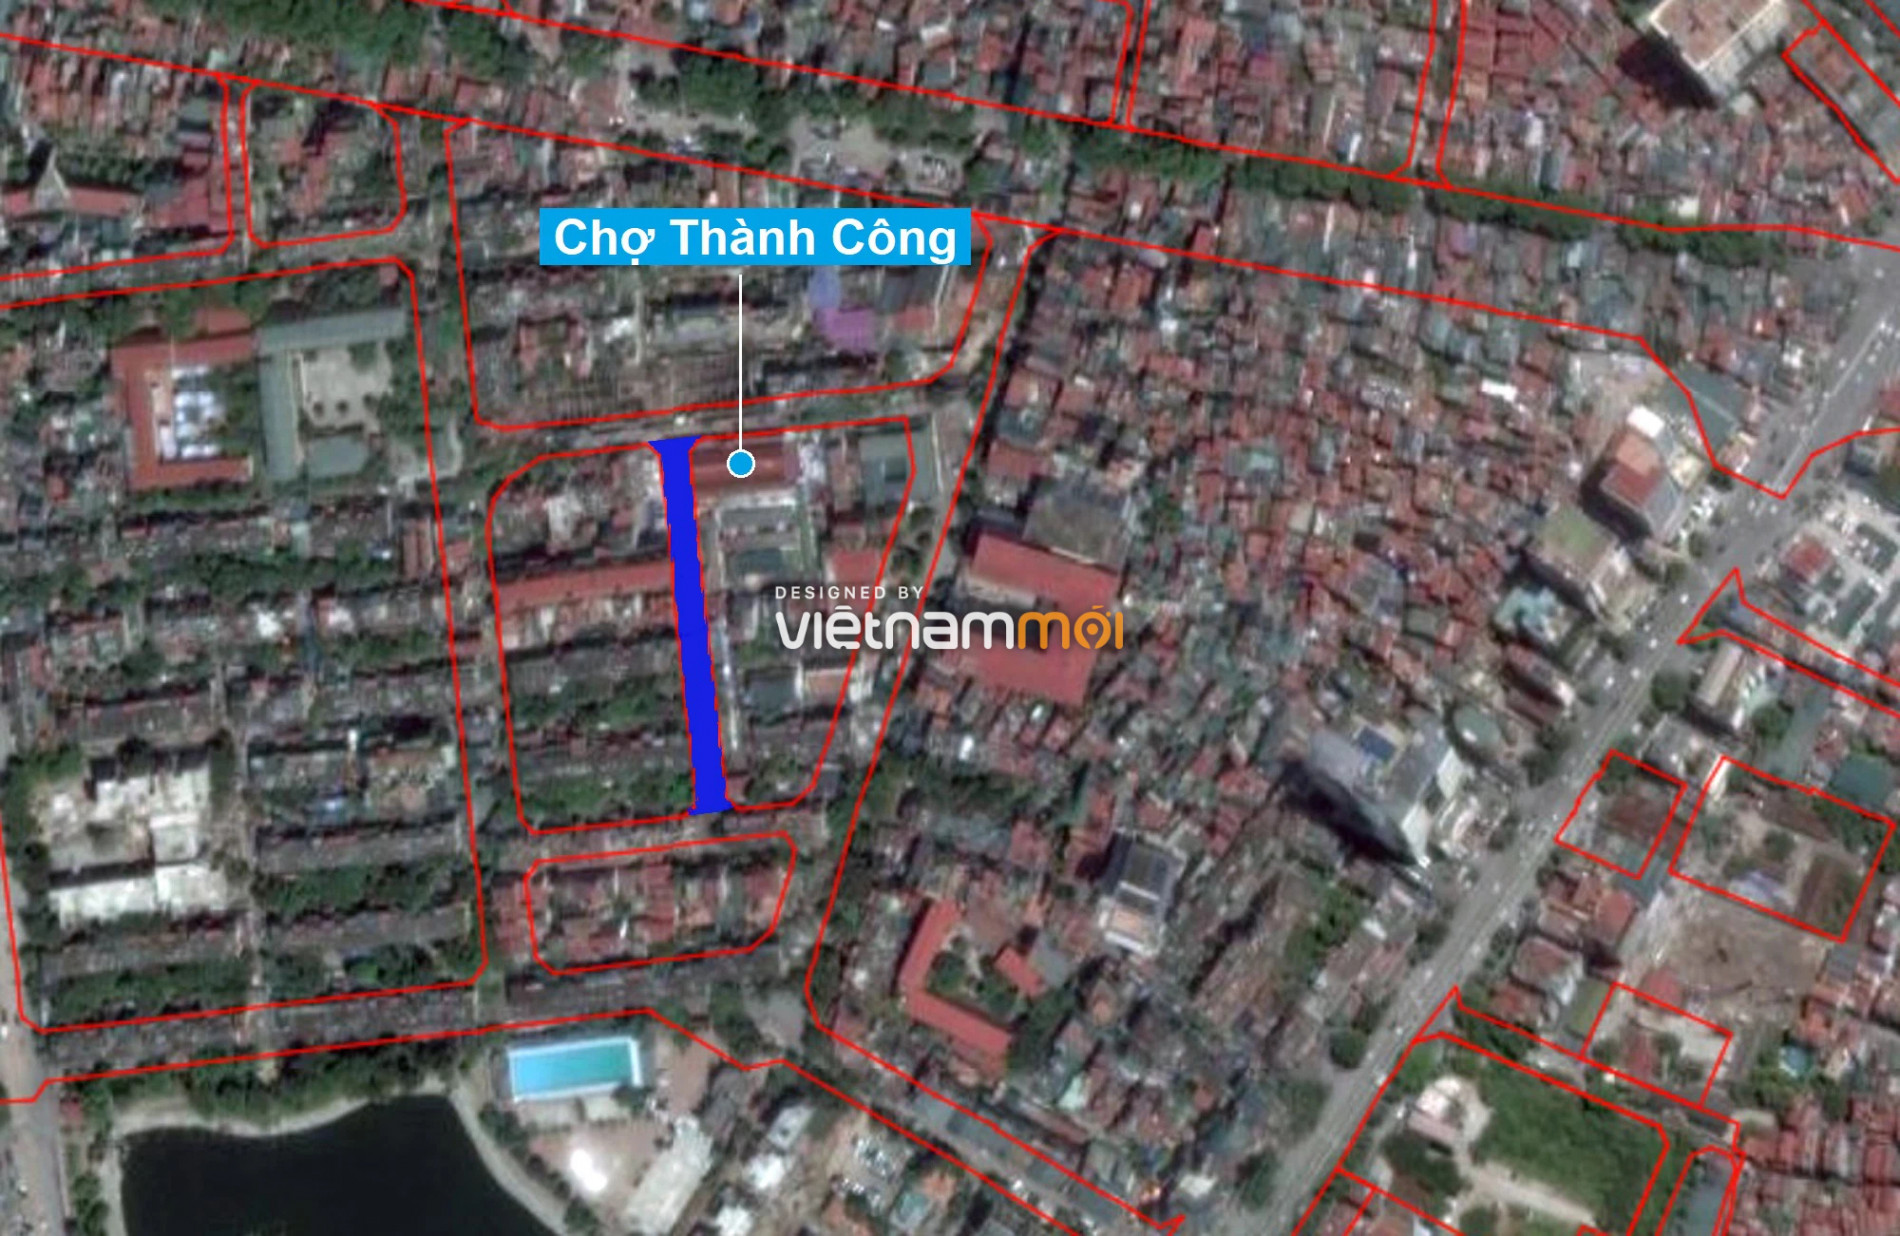 Những khu đất sắp thu hồi để mở đường ở phường Thành Công, Ba Đình, Hà Nội (phần 2) - Ảnh 14.